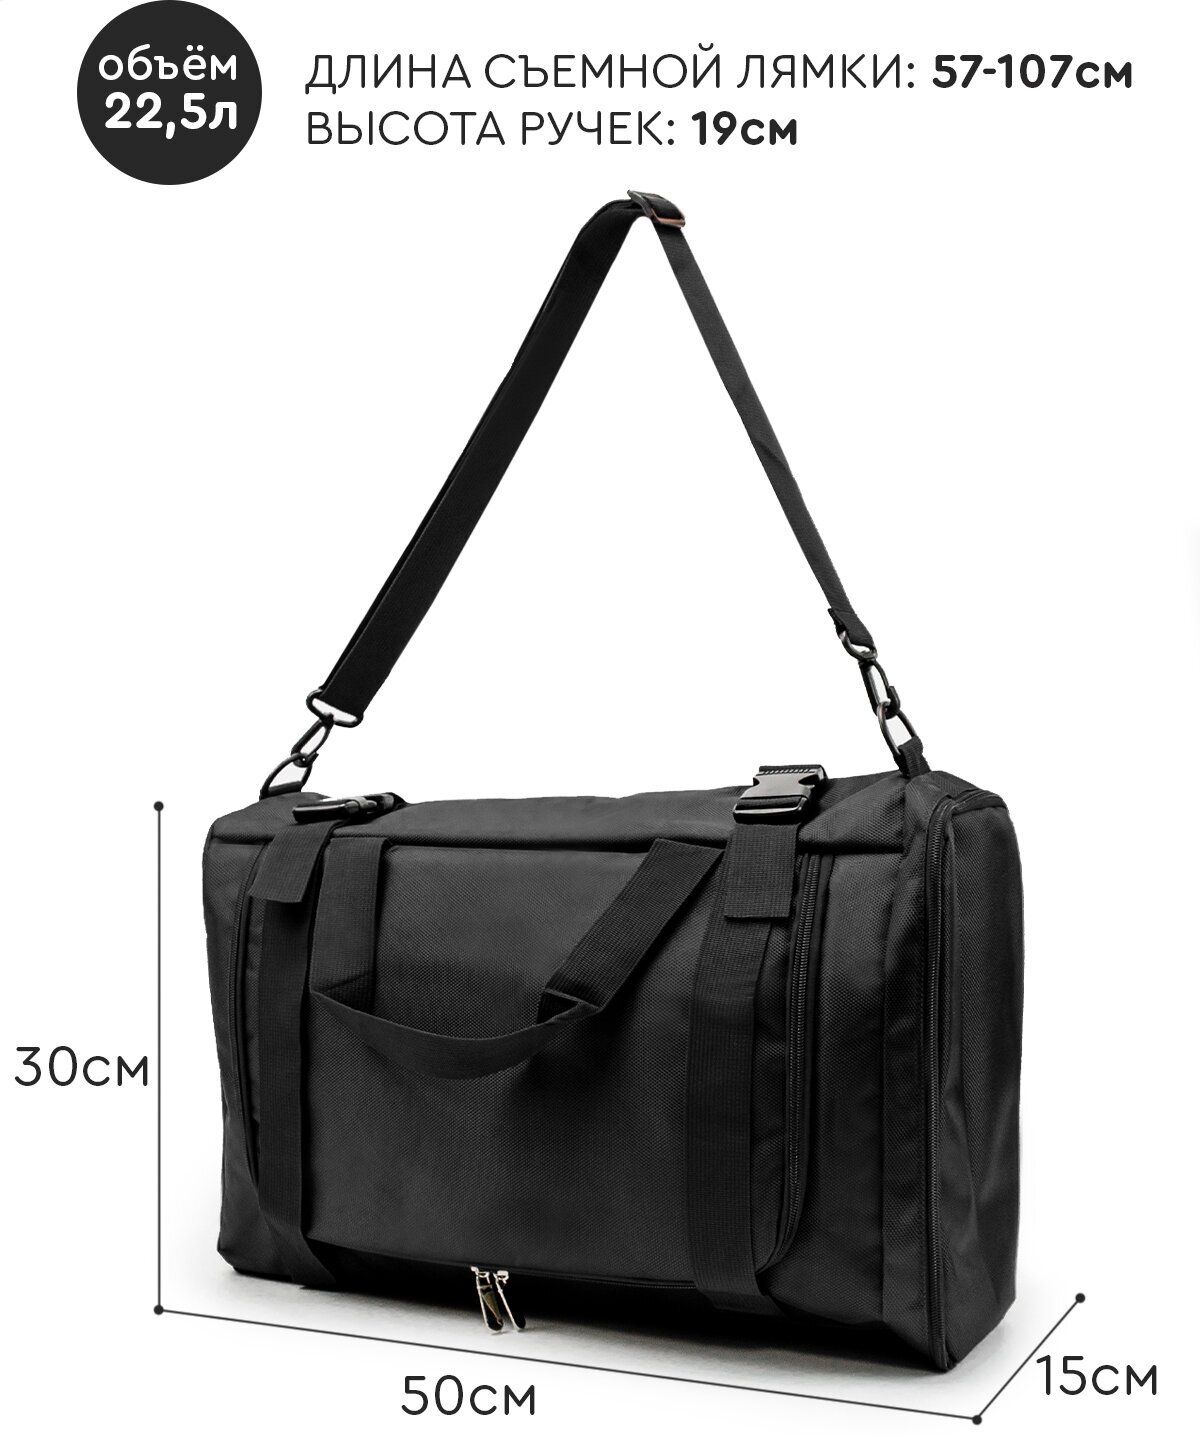 Рюкзак-спортивная сумка (22,5 л, черная) UrbanStorm трансформер большой размер для фитнеса, отдыха \ школьный для мальчиков, девочек - фотография № 2